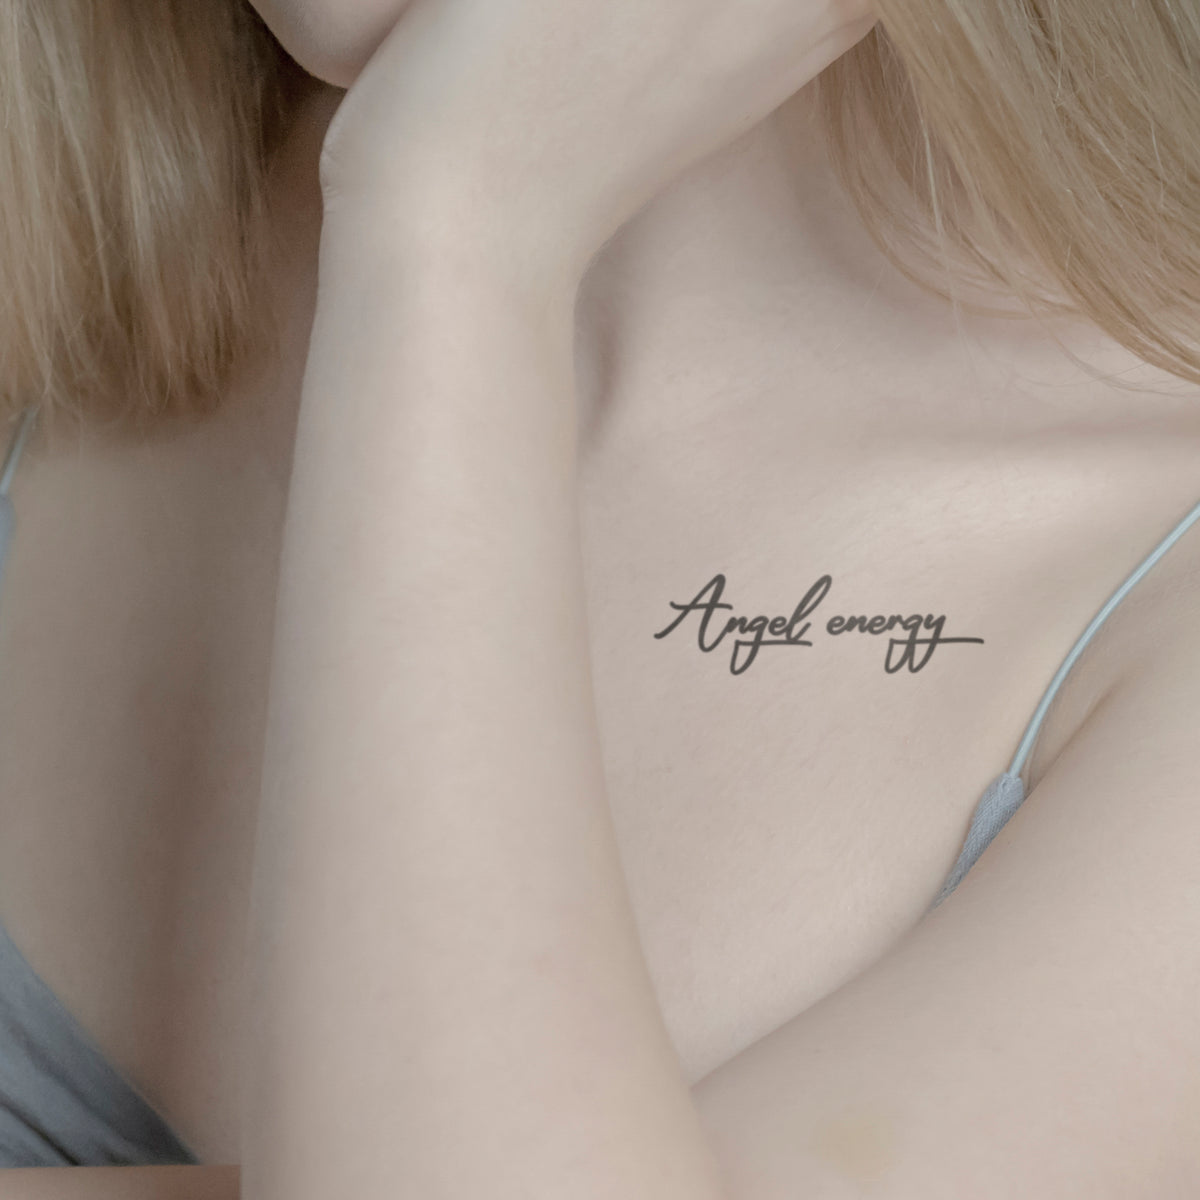 Angel energy Tattoo von minink, der Marke für temporäre Tattoos.